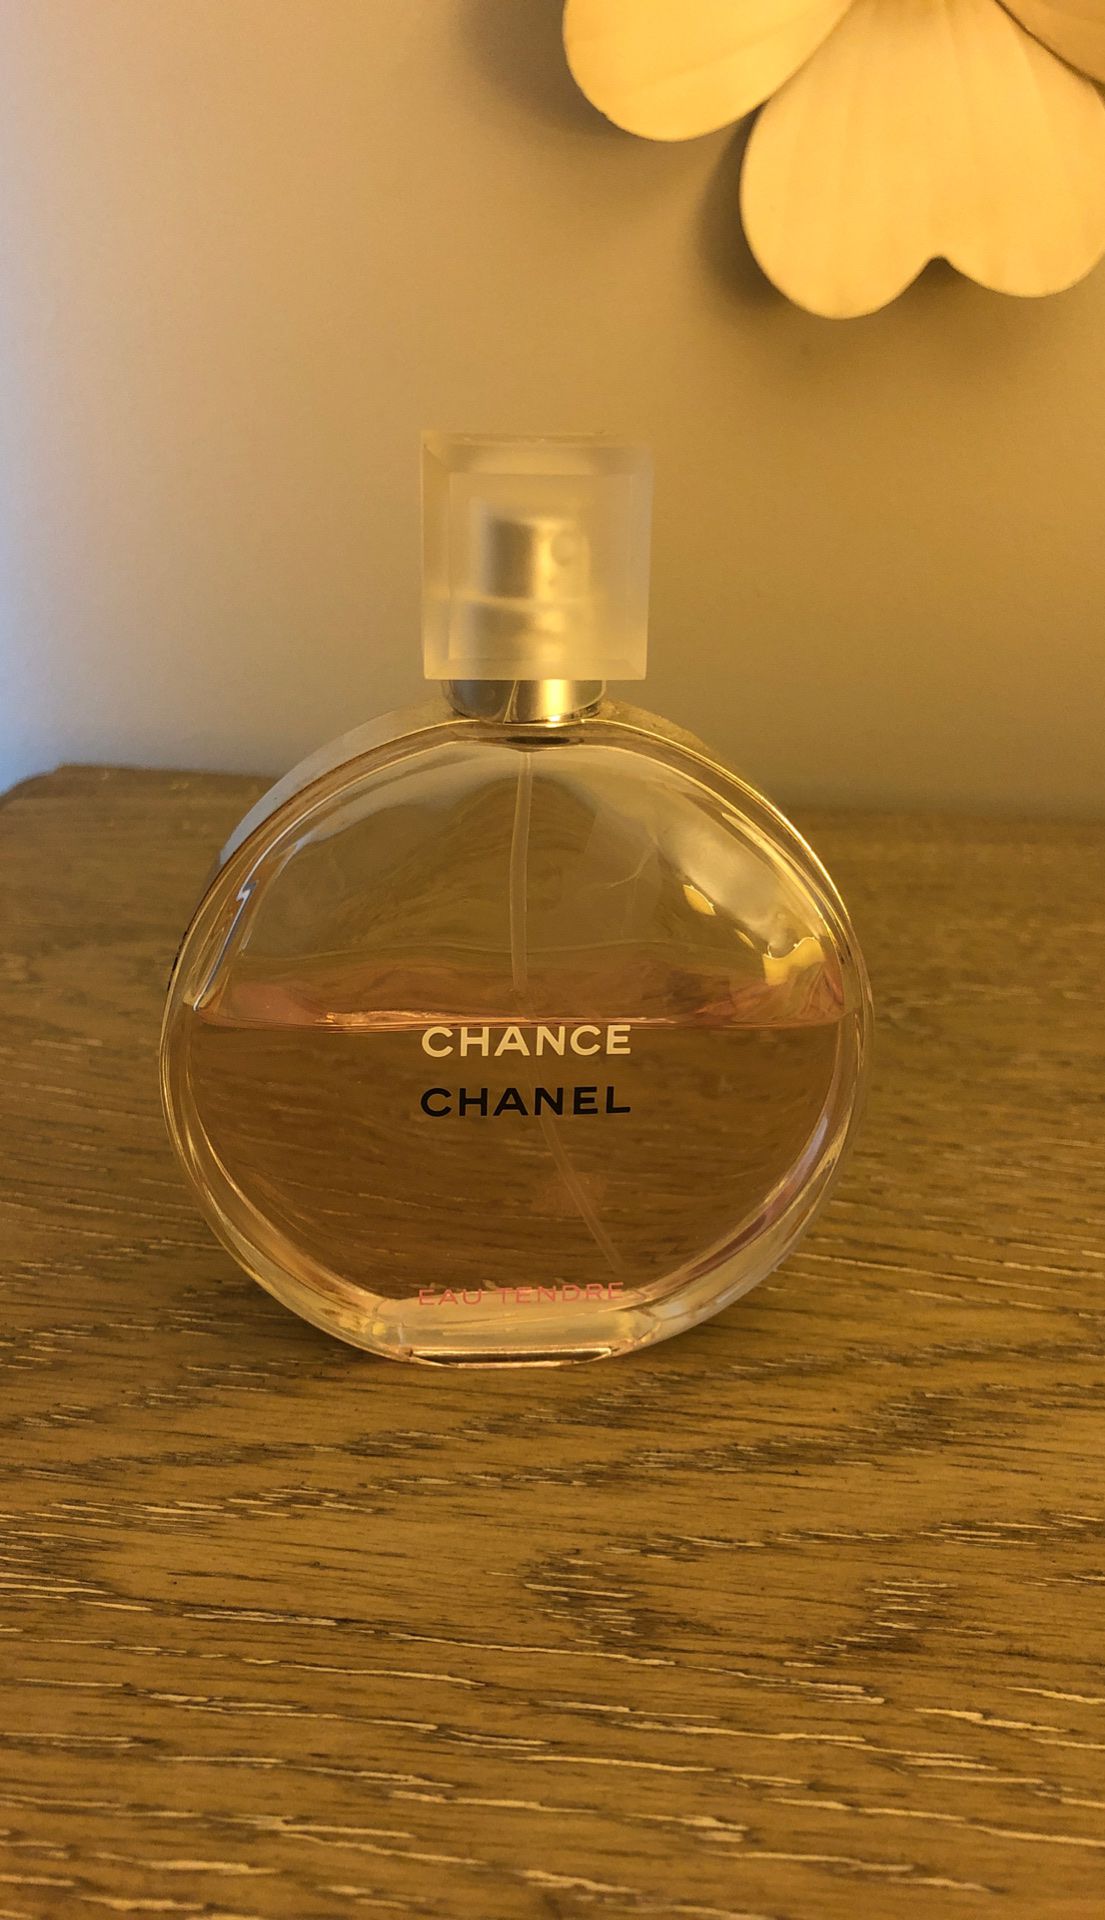 Chanel eau tendre perfume